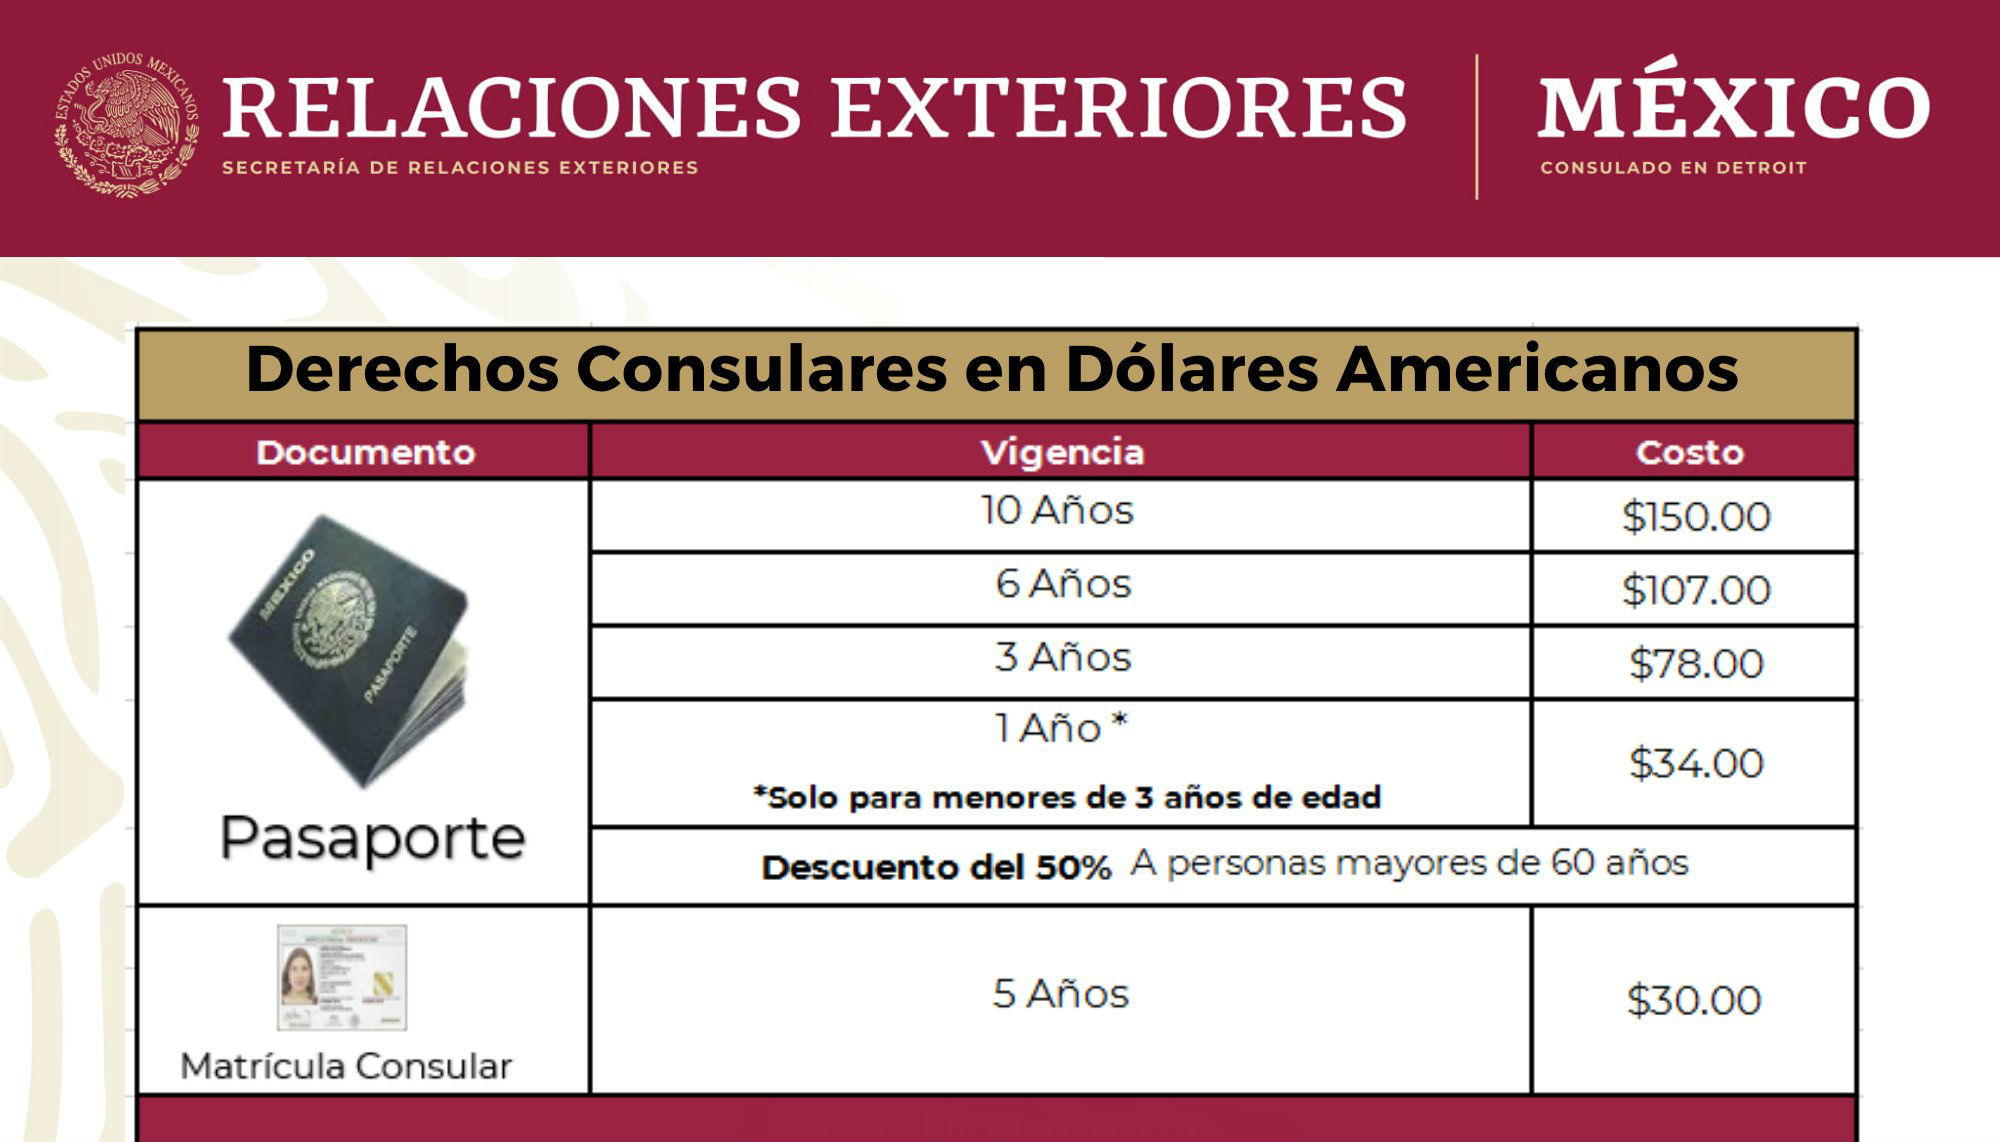 Desde 2019, el costo del pasaporte mexicano se taza en dólares, por lo que su costo puede variar dependiendo de la cotización del dólar.